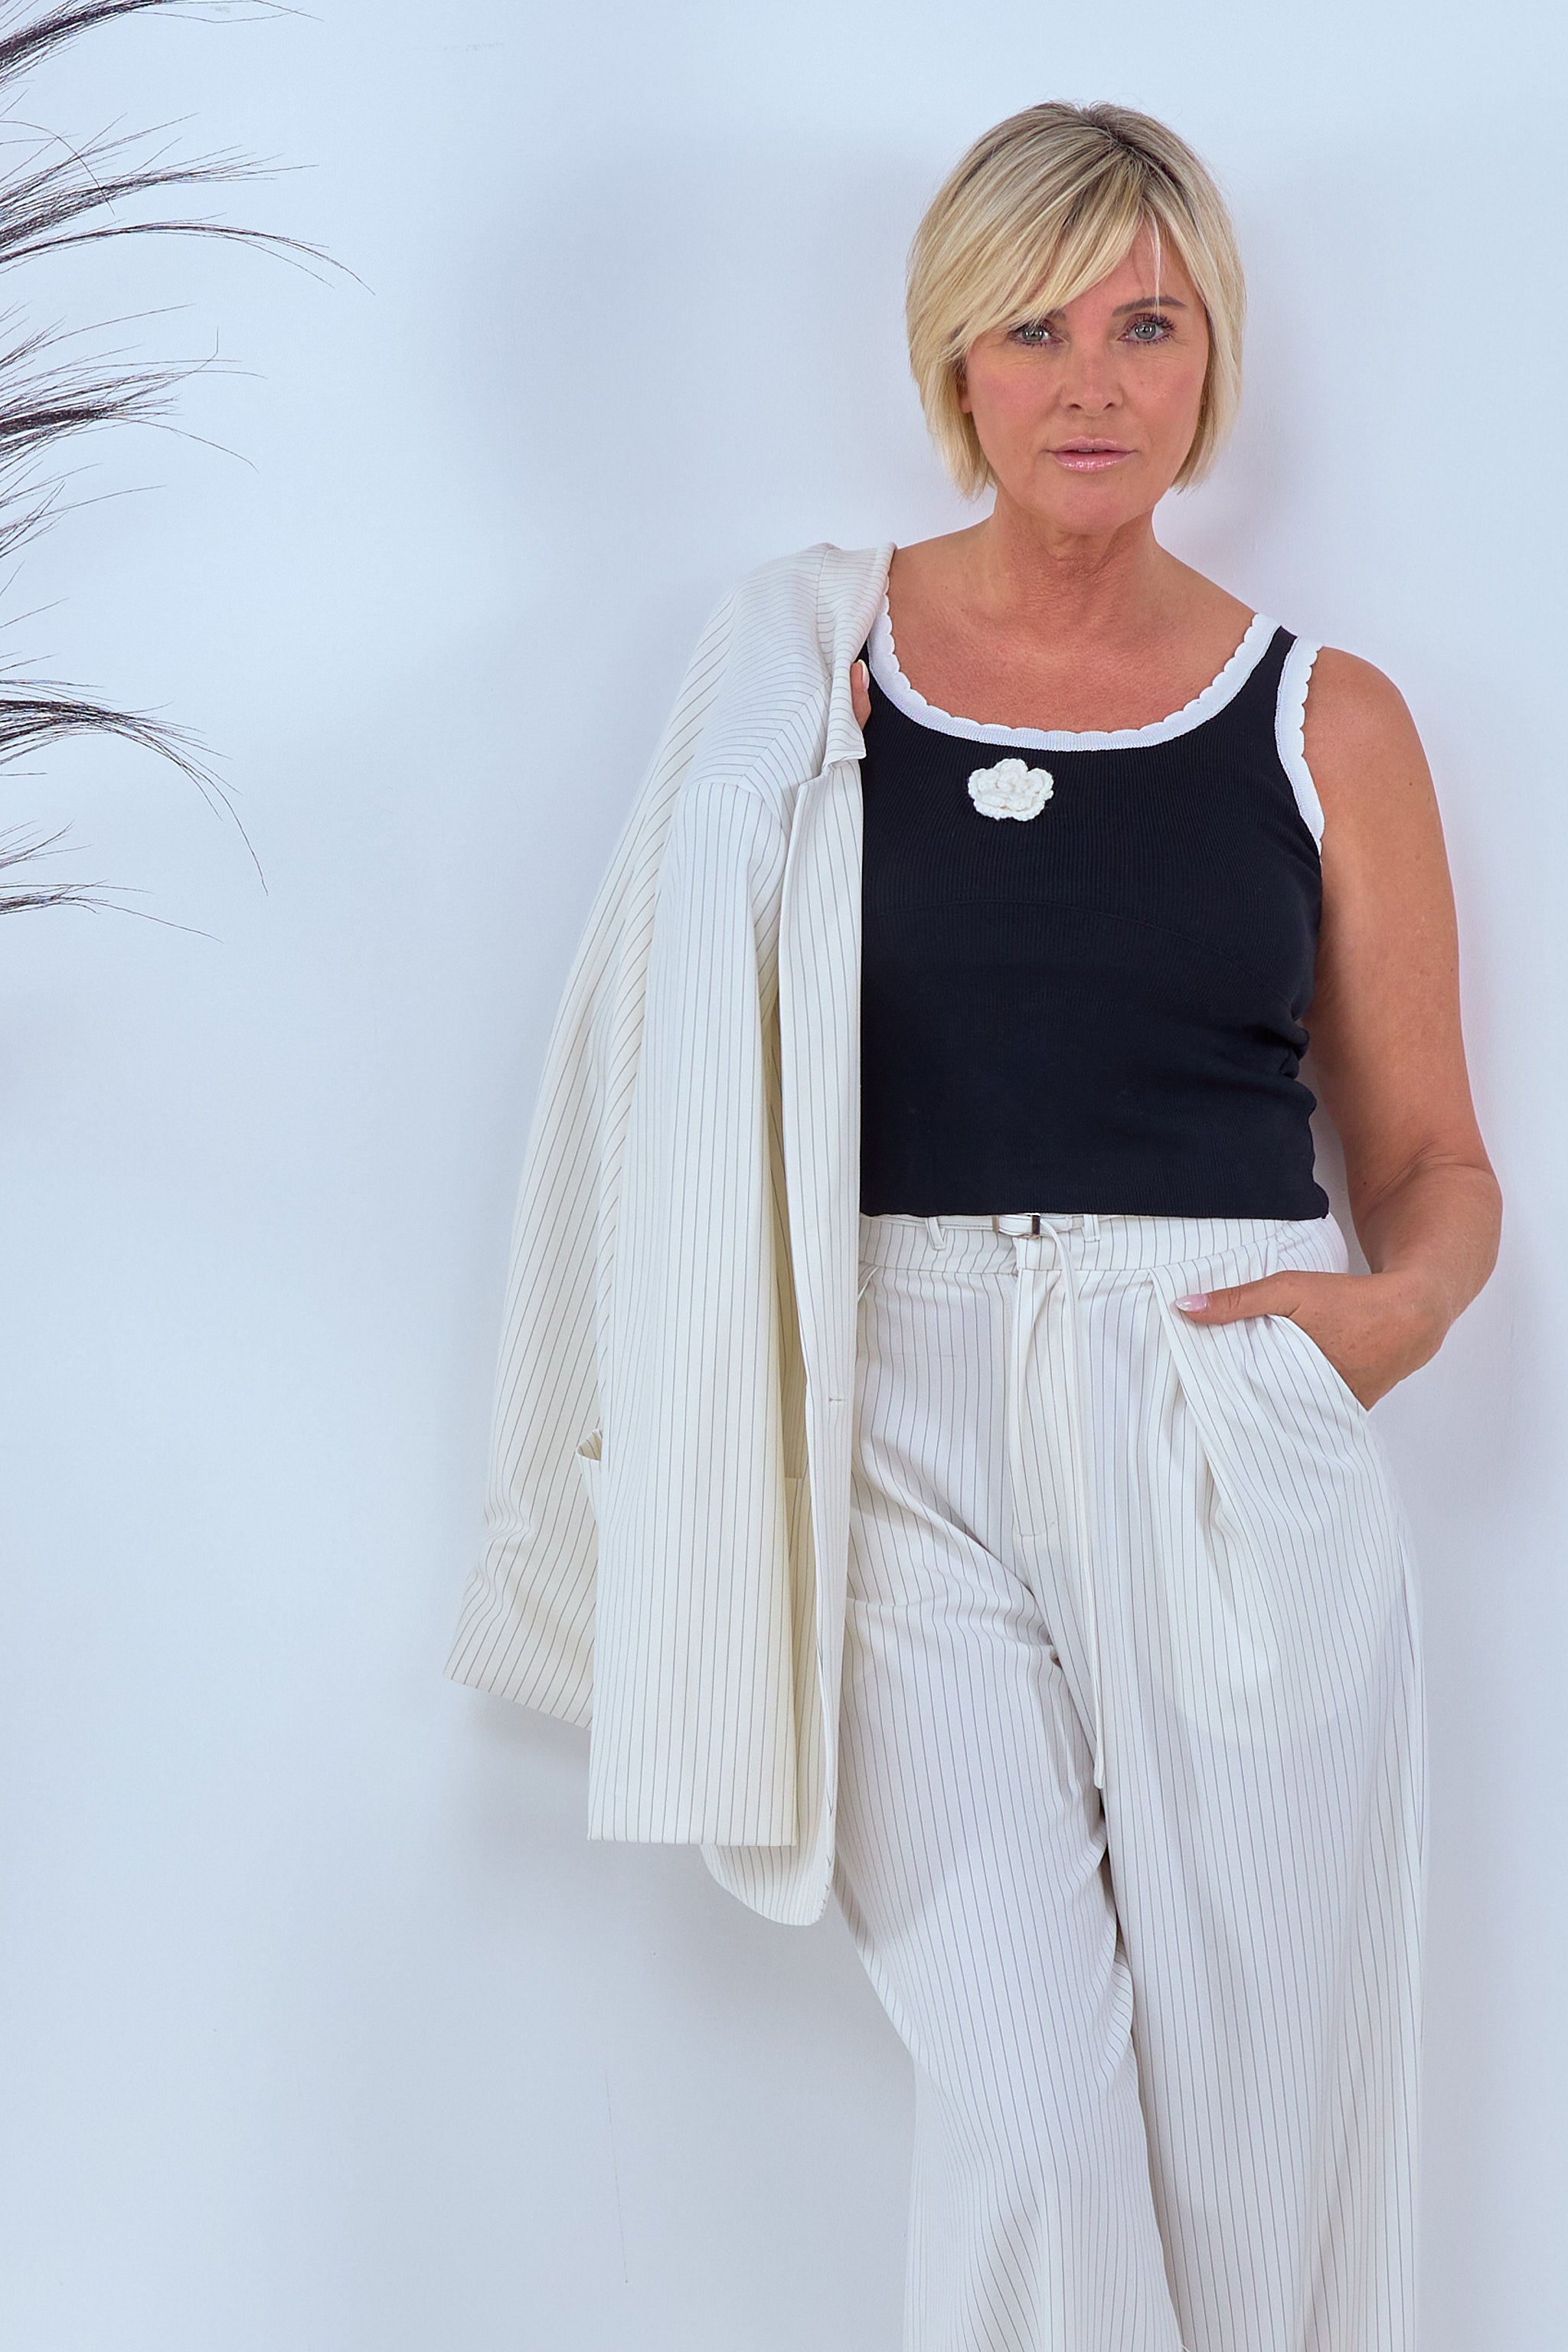 Damen Stricktop mit Blume in schwarz-weiß von Trends & Lifestyle Deutschland GmbH